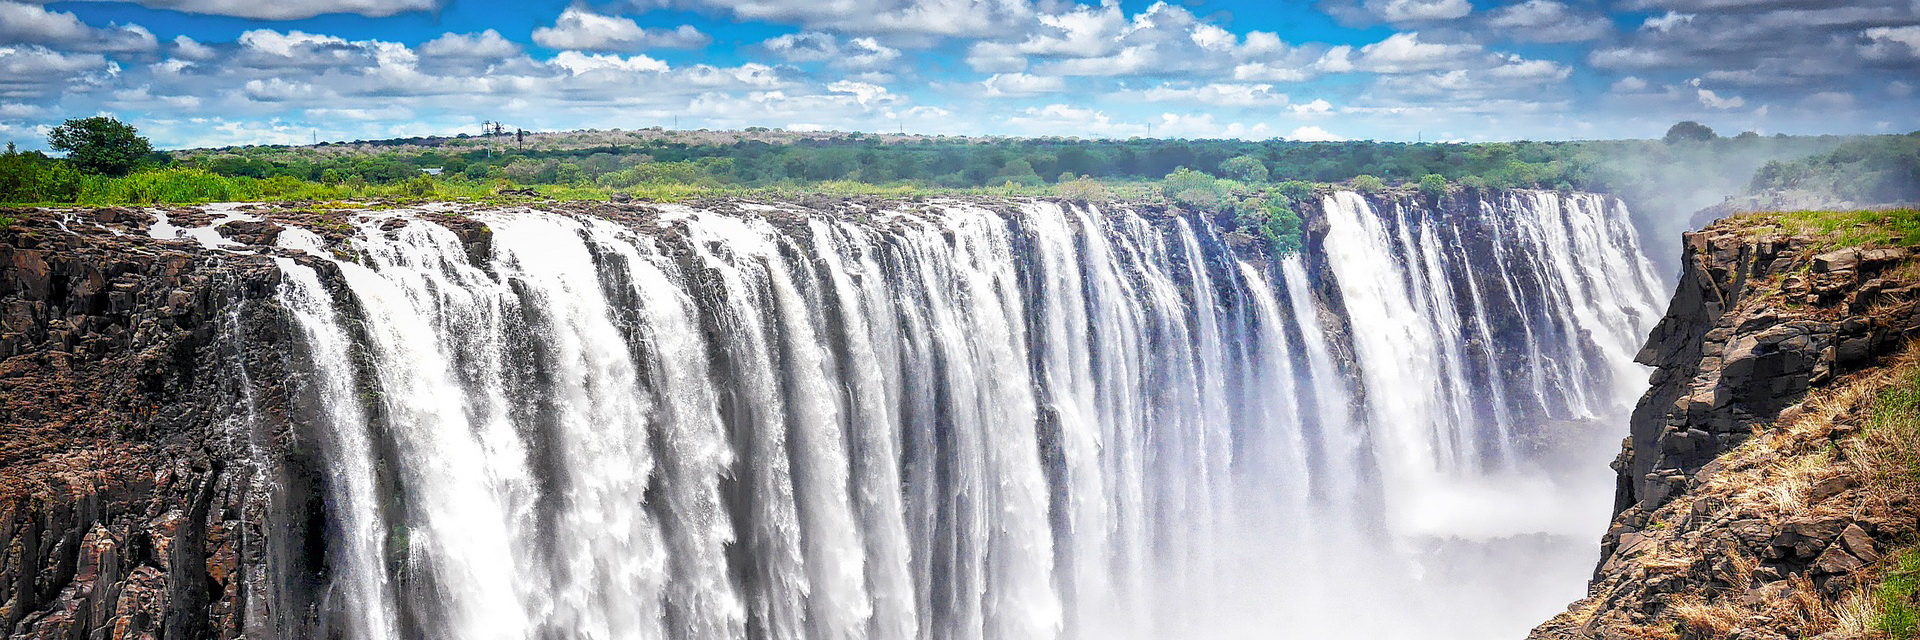 Victoria Falls -  Zambia and Zimbabwe - images